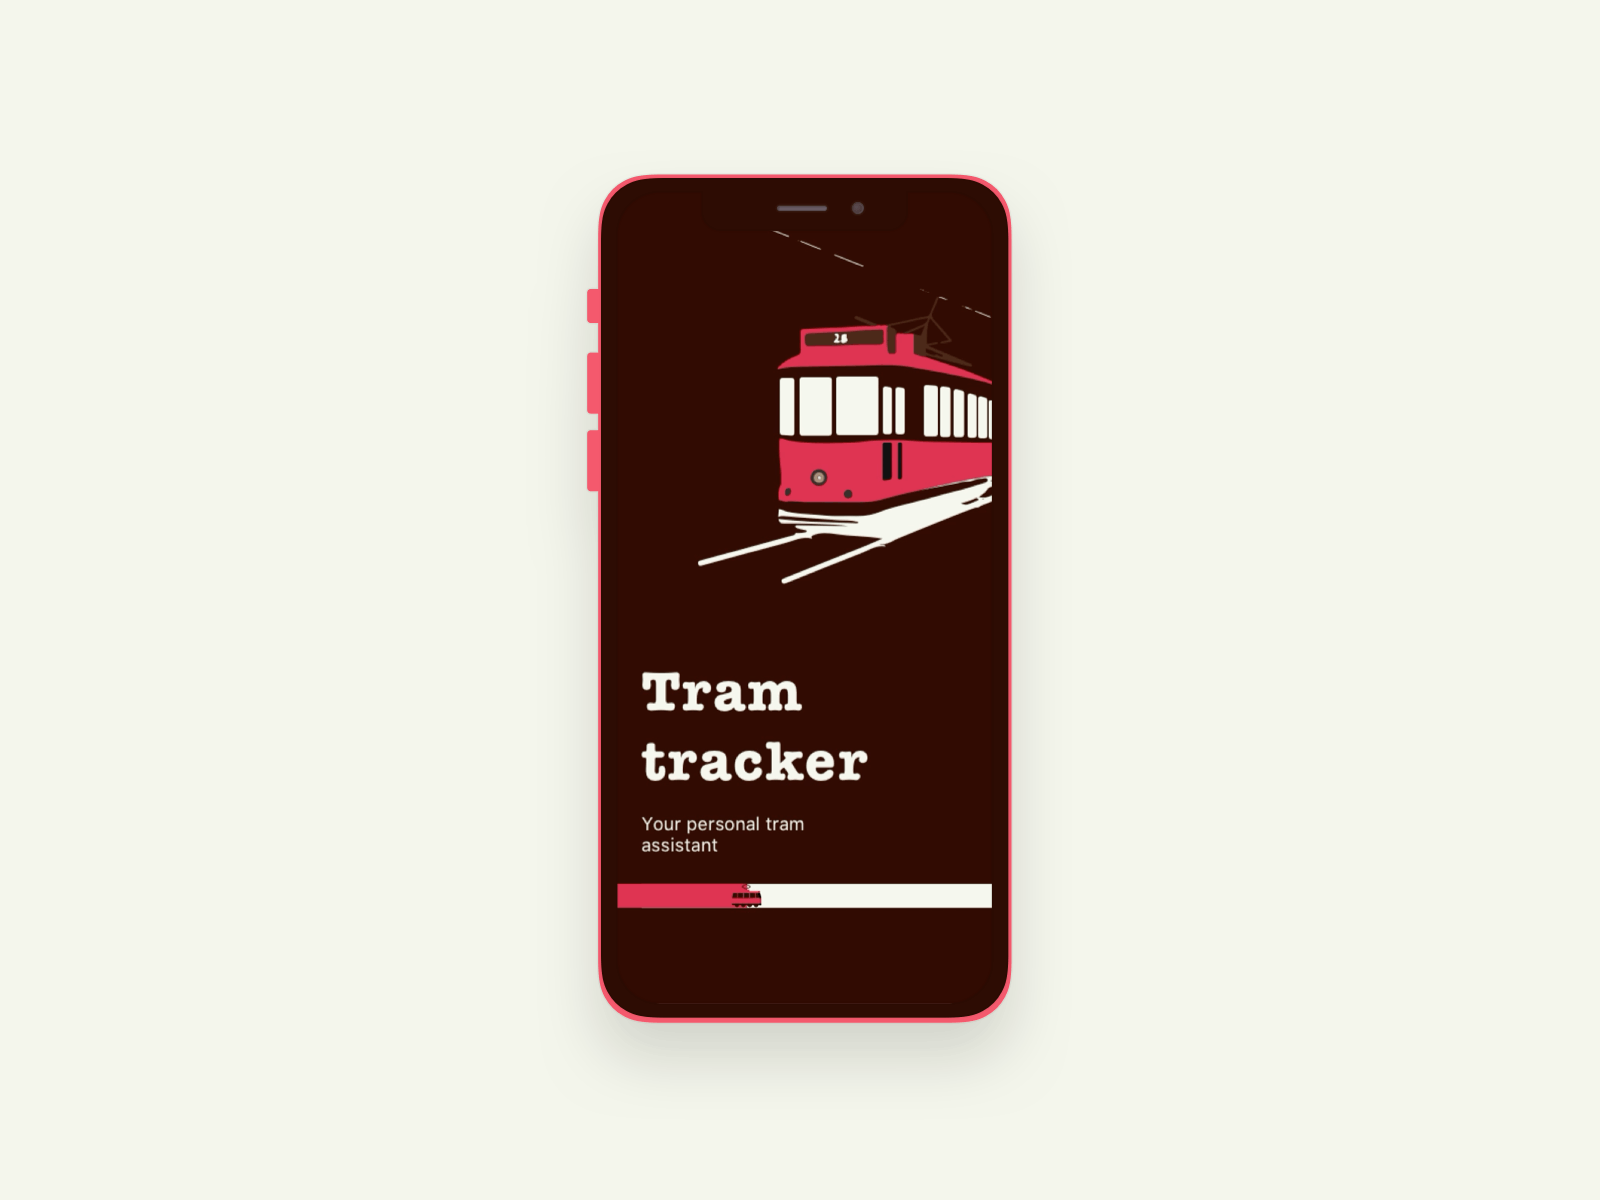 Tram tracker App animation app design illustration ui ux